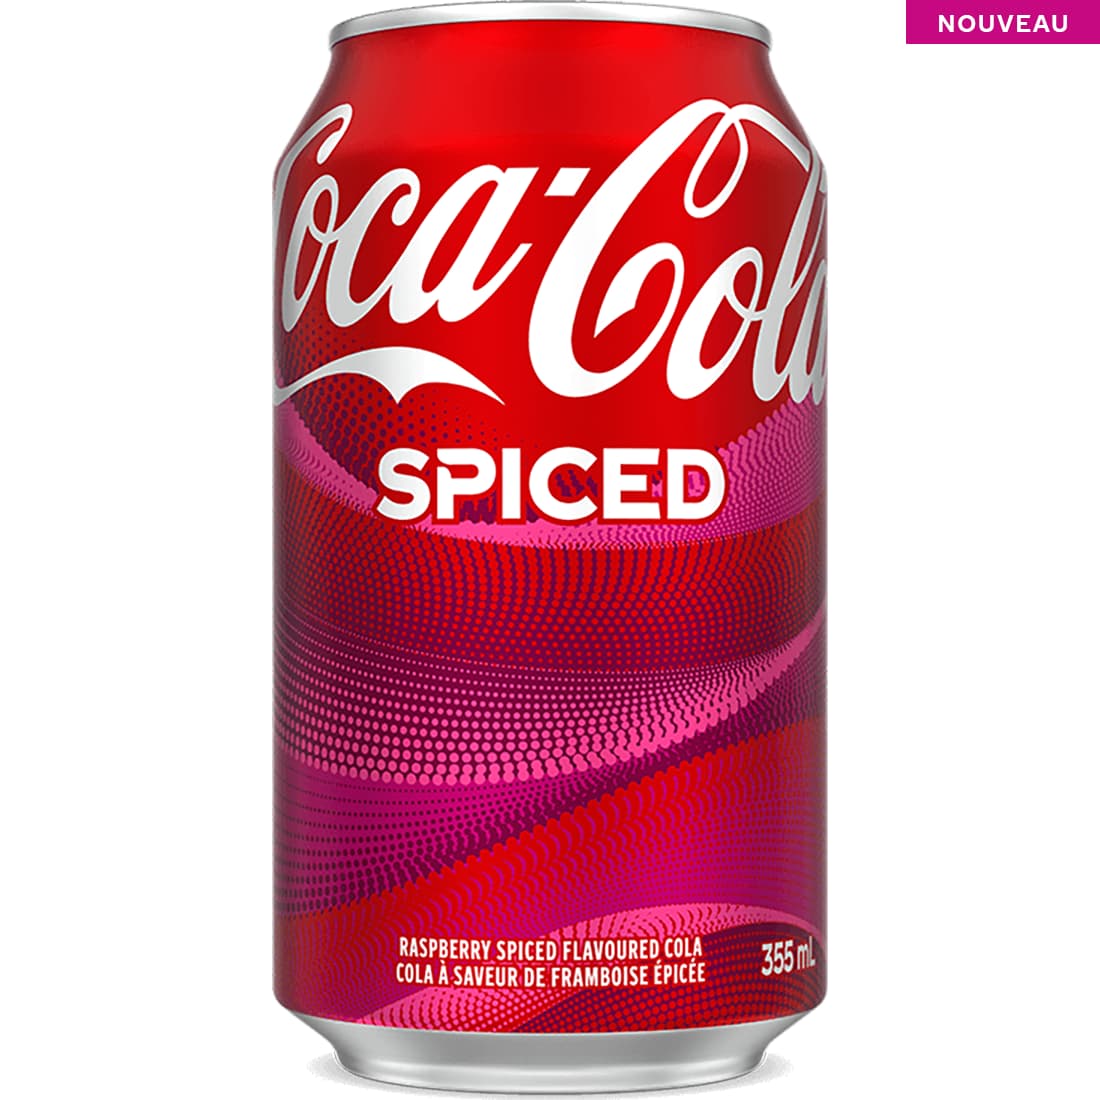 NOUVEAU Coca-Cola Spiced 355 mL canette